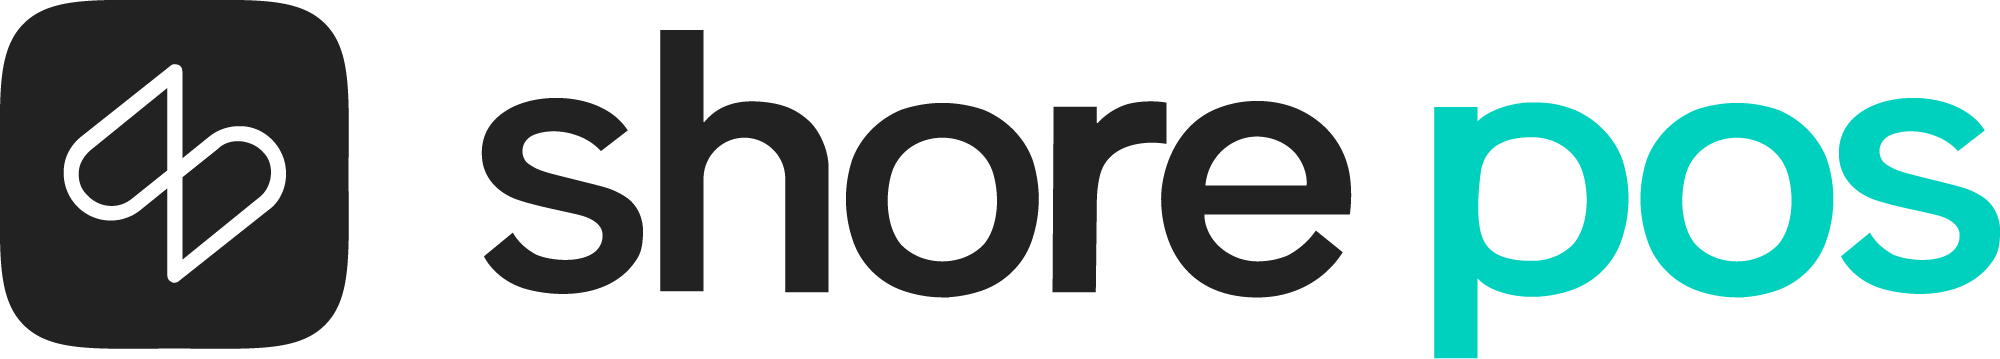 Logo Shore